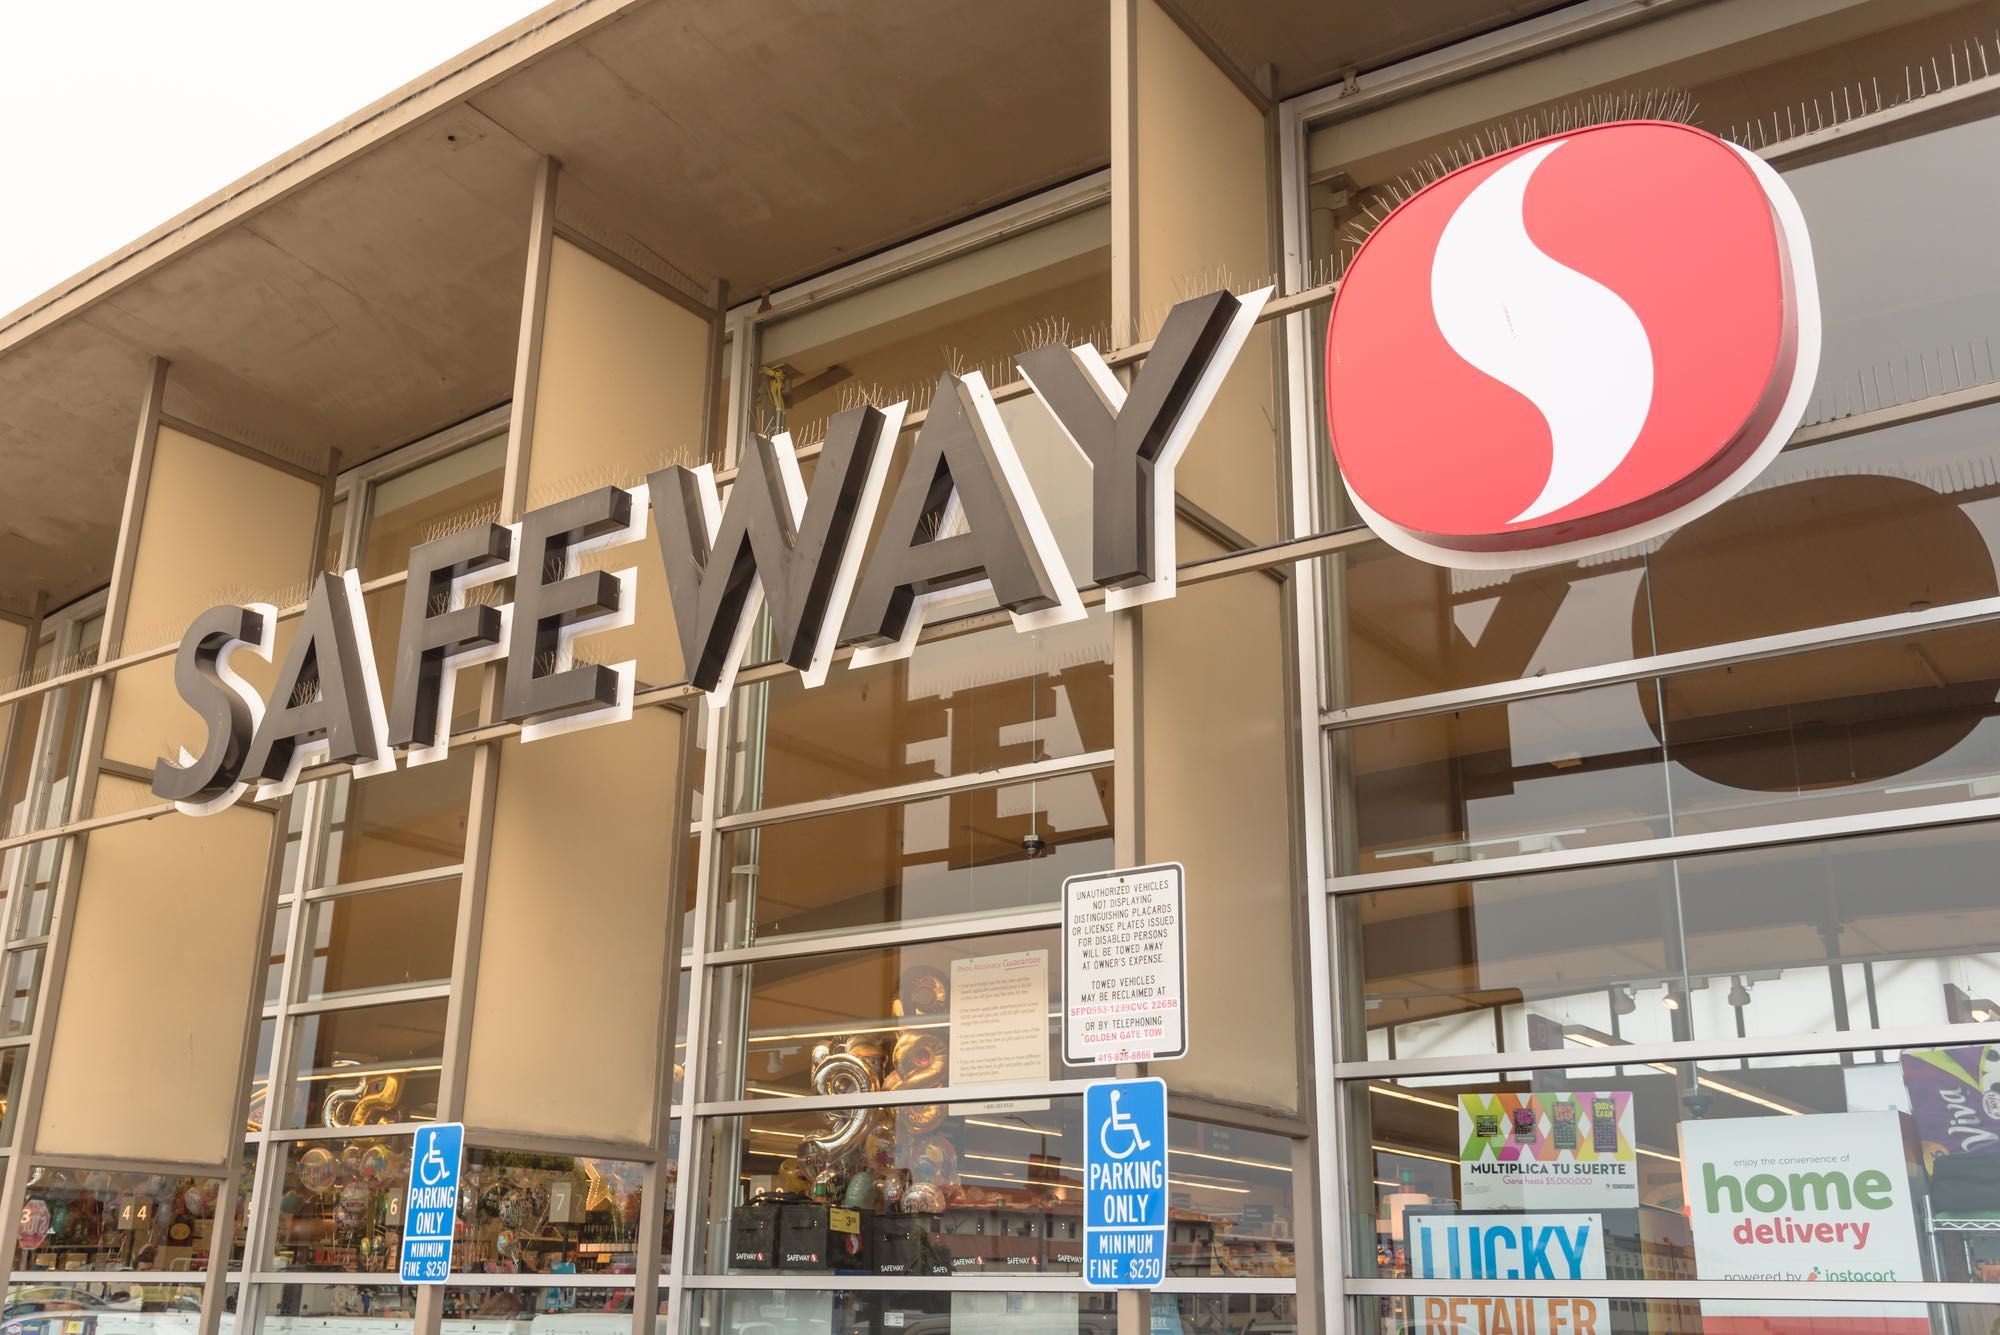 Safeway sign on storefront